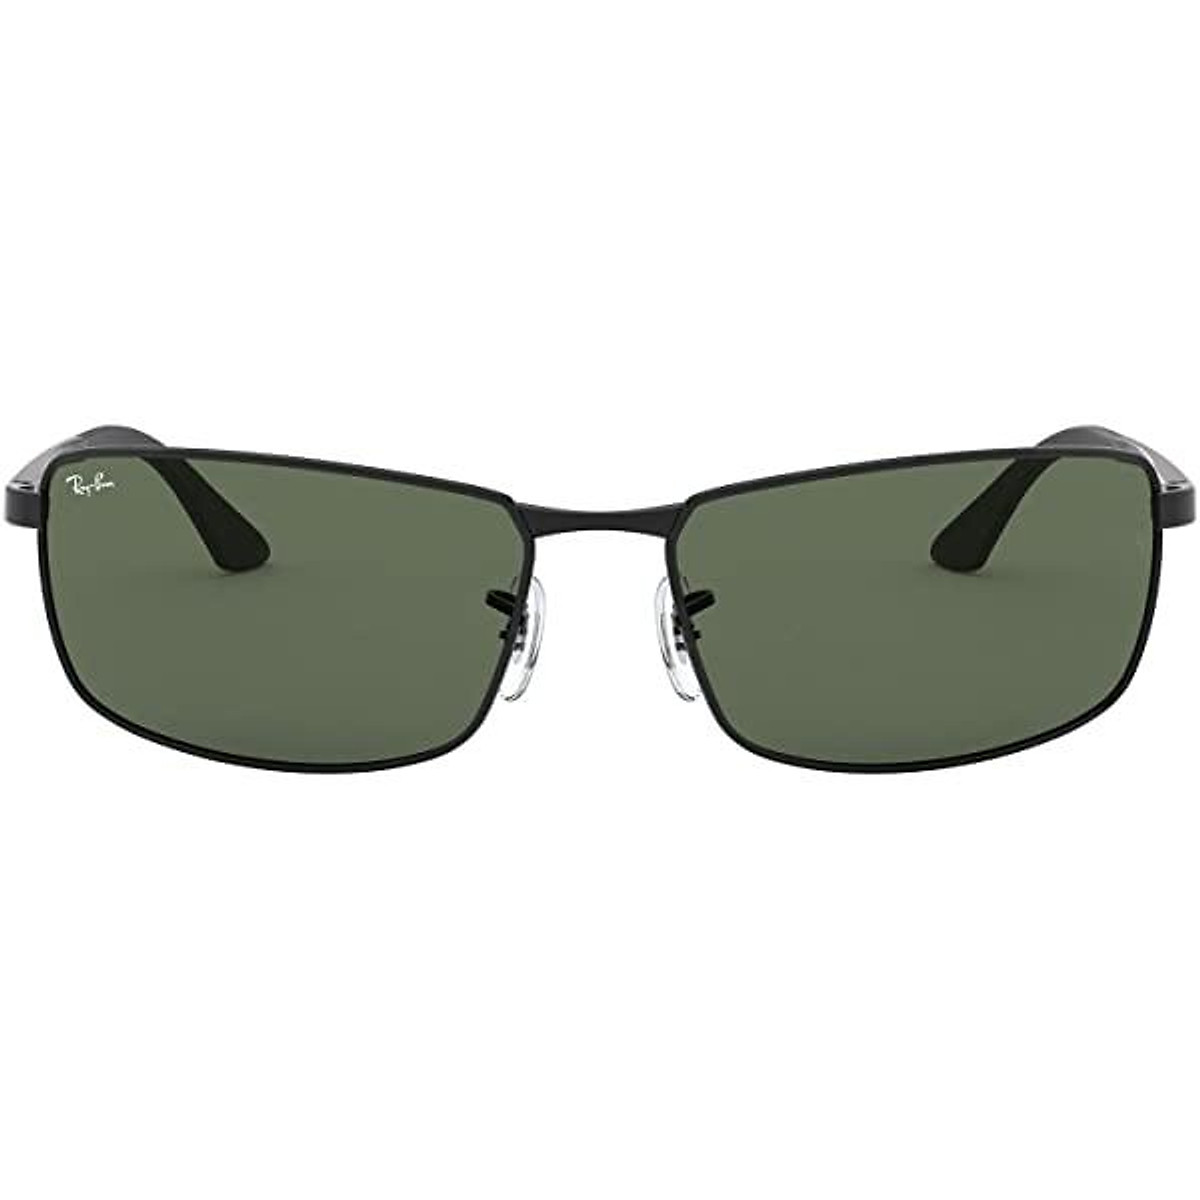 Mua Ray-Ban Men's RB3498 Rectangular Metal Sunglasses